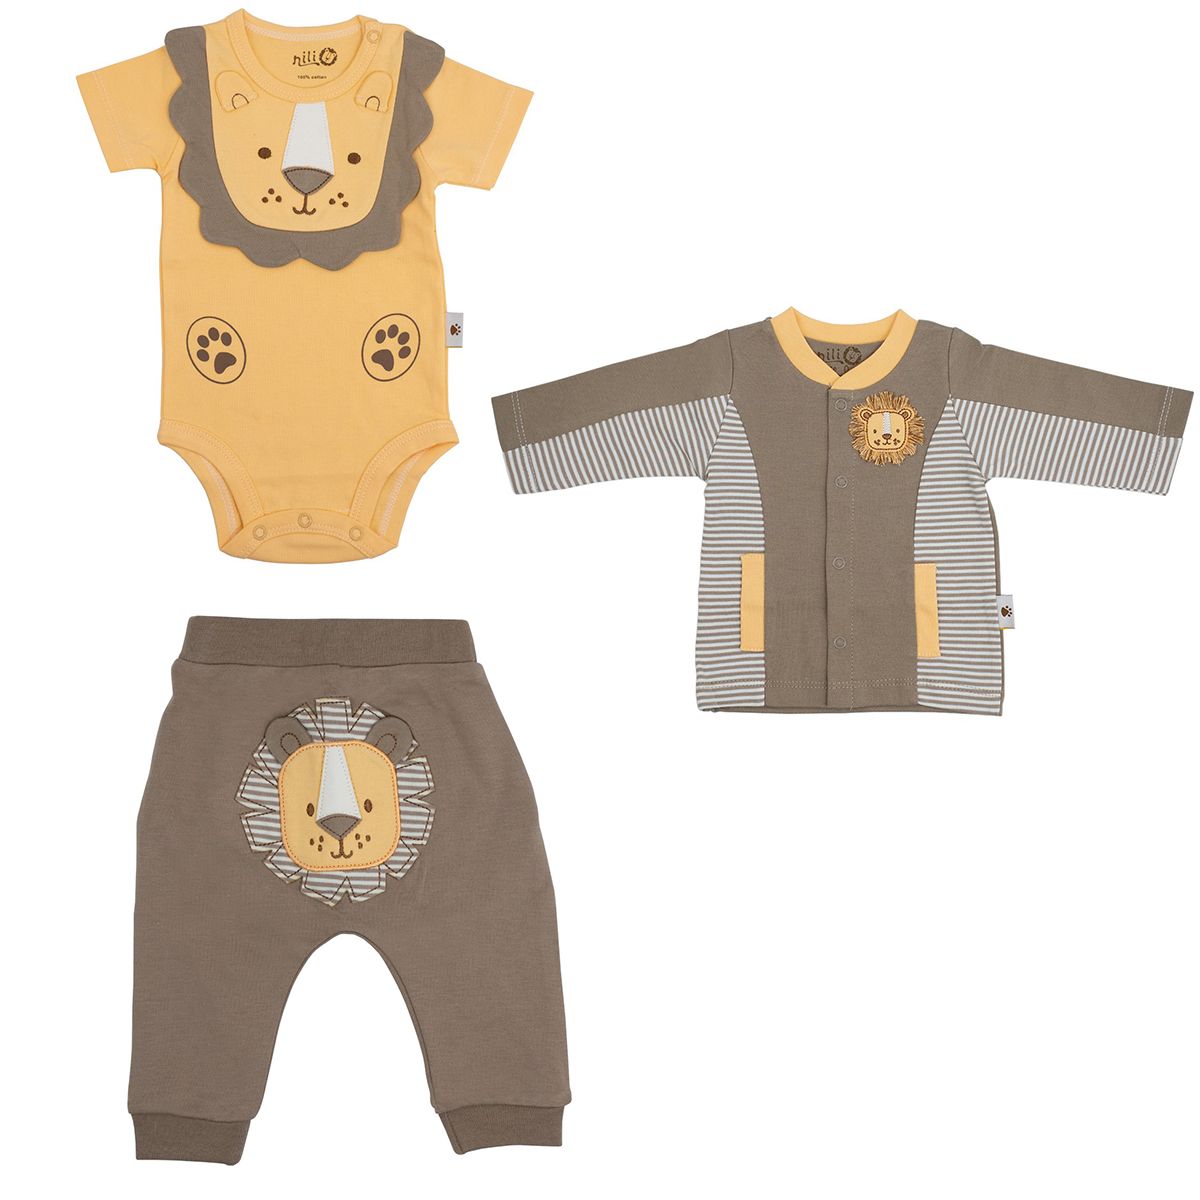 ست 3 تکه لباس نوزادی نیلی مدل lion s 2022 -  - 1